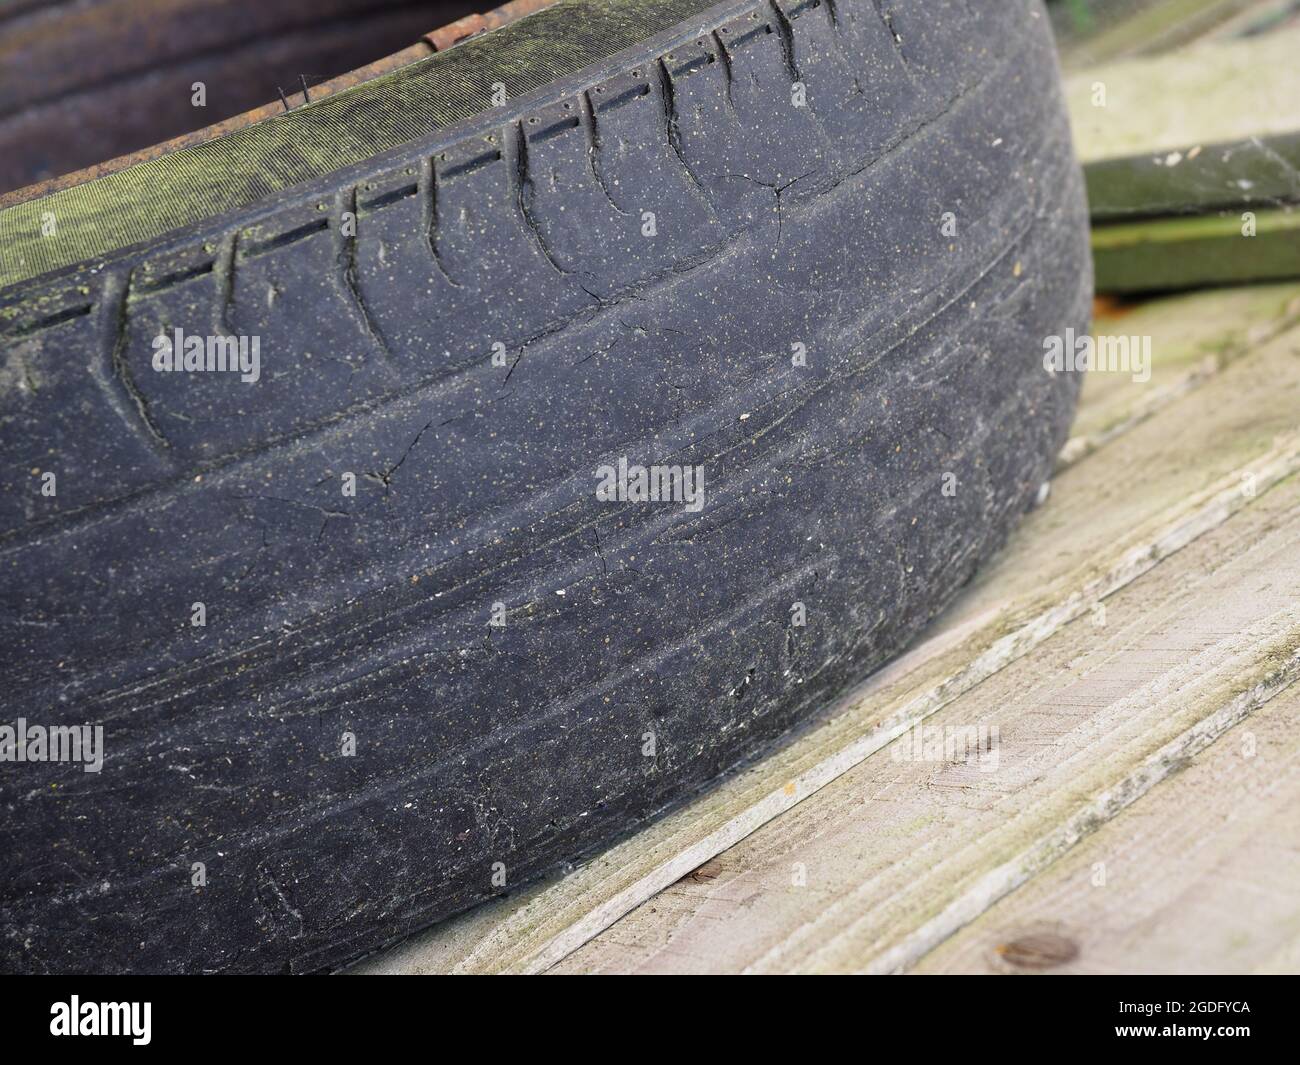 Gros plan d'un vieux pneu usé et presque chauve Banque D'Images